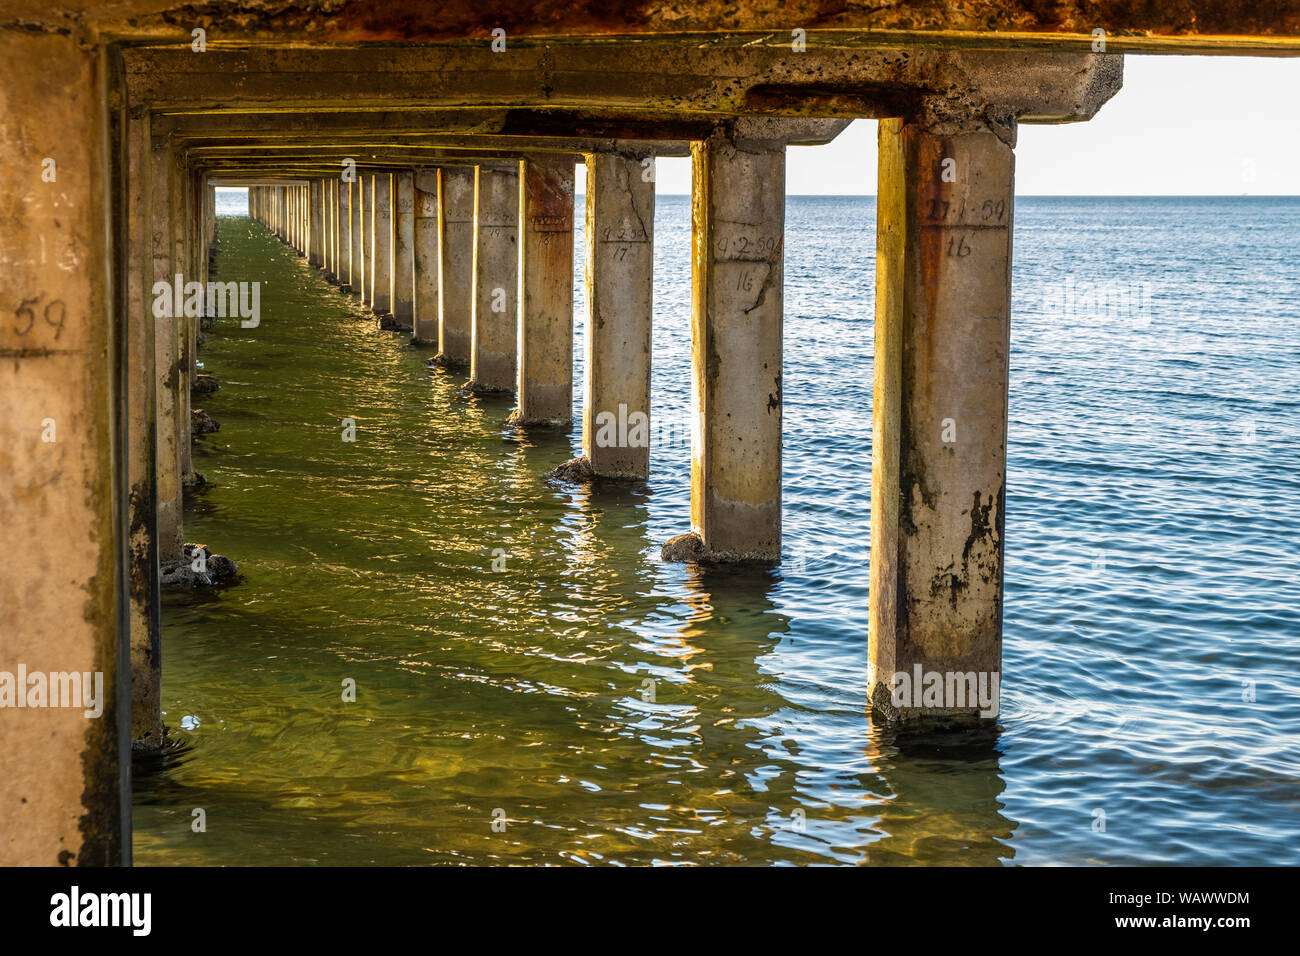 Perspectiva decreciente de pilares de madera debajo de un muelle en la costa del océano Foto de stock